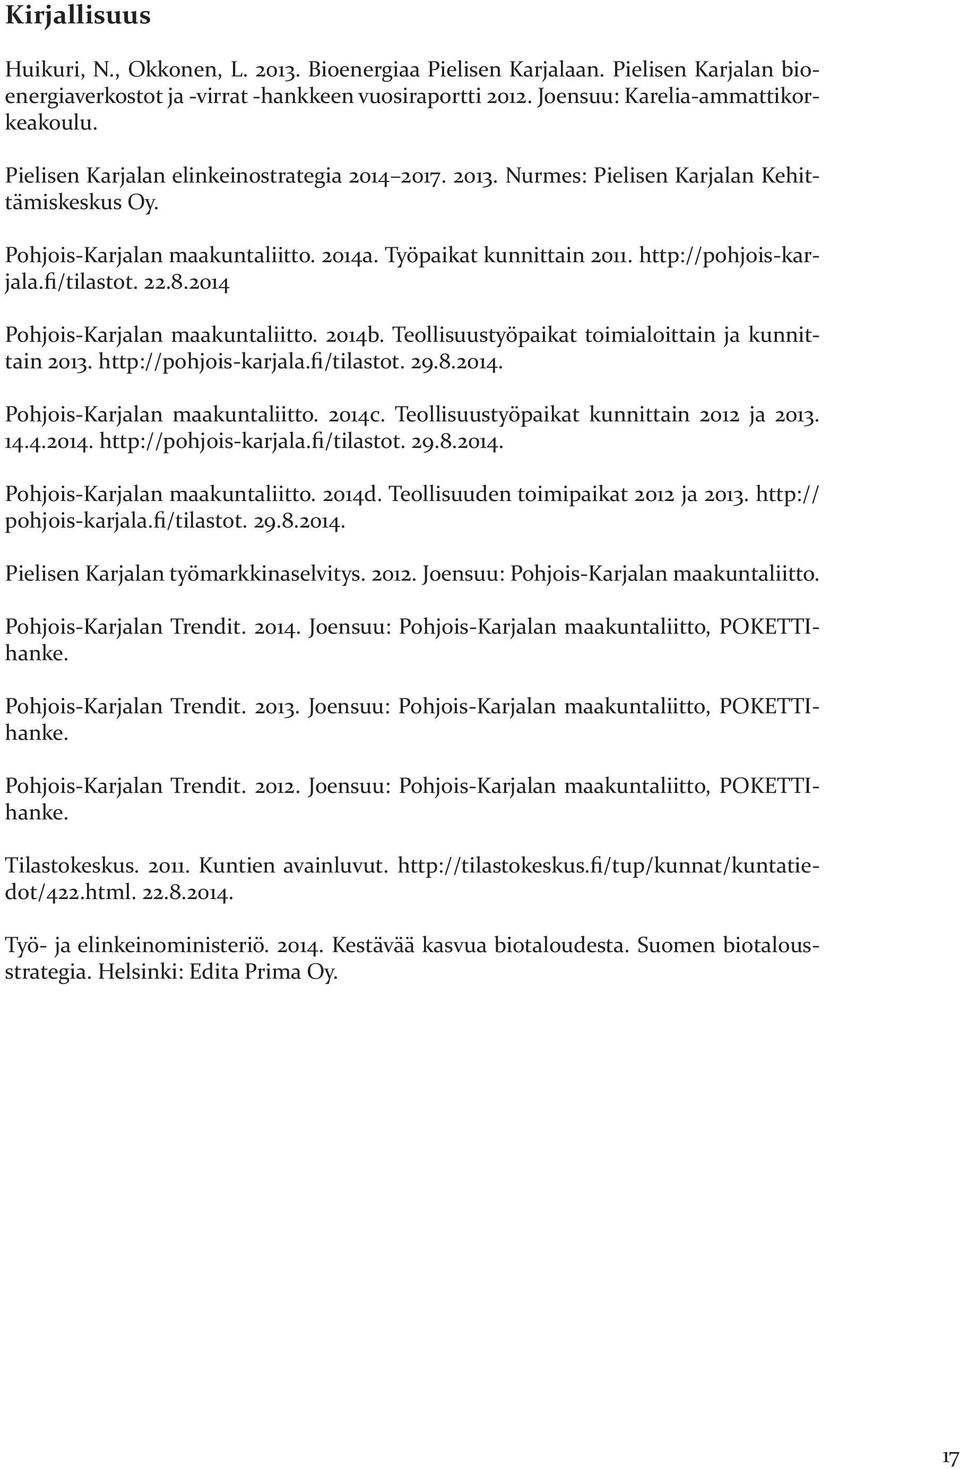 fi/tilastot. 22.8.2014 Pohjois-Karjalan maakuntaliitto. 2014b. Teollisuustyöpaikat toimialoittain ja kunnittain 2013. http://pohjois-karjala.fi/tilastot. 29.8.2014. Pohjois-Karjalan maakuntaliitto. 2014c.